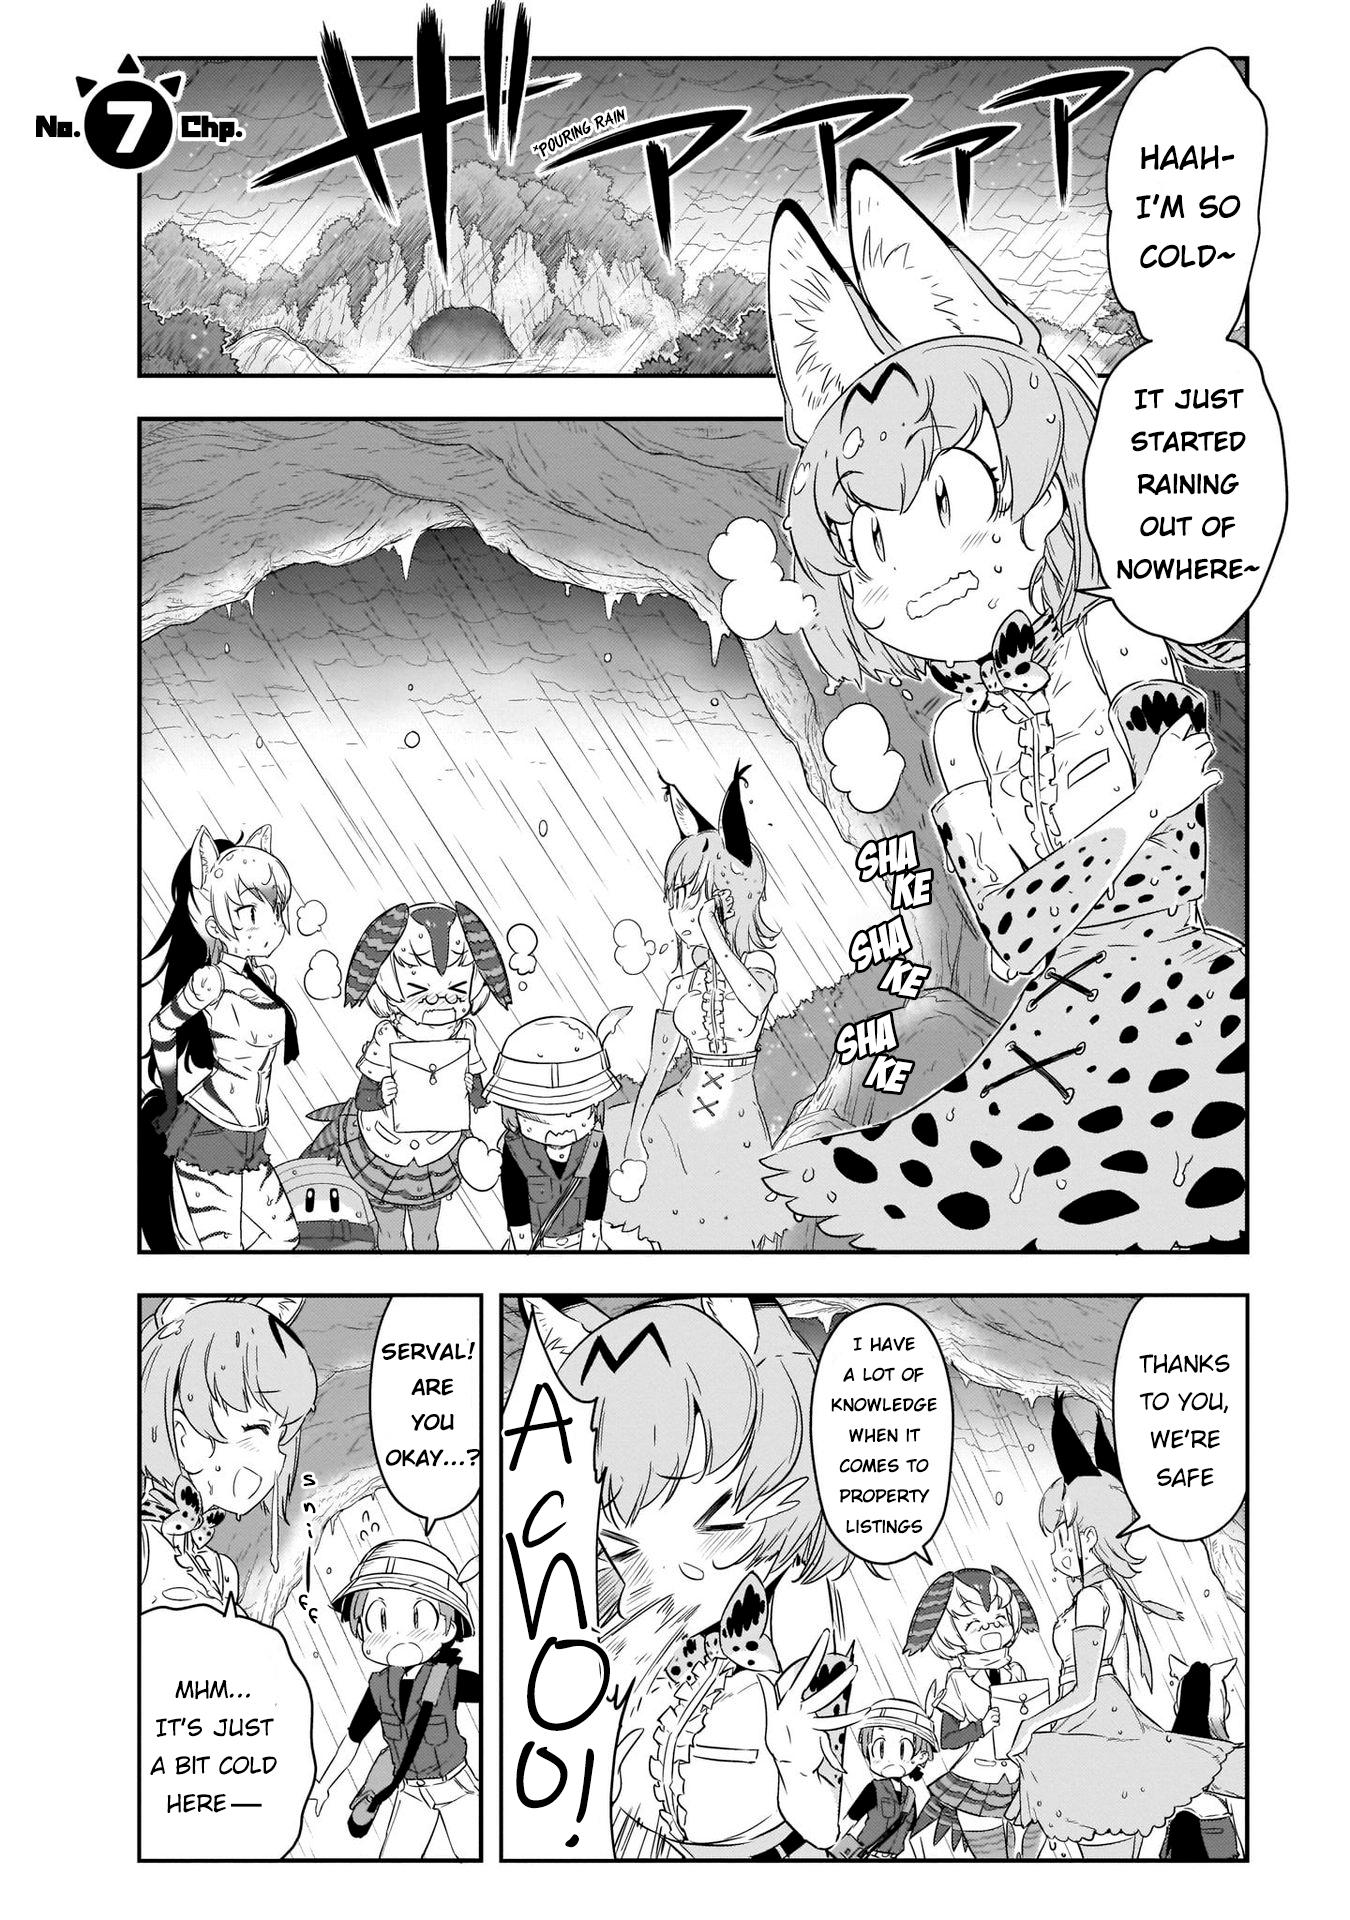 Read Kemono Friends 2 Vol.2 Chapter 7 on Mangakakalot